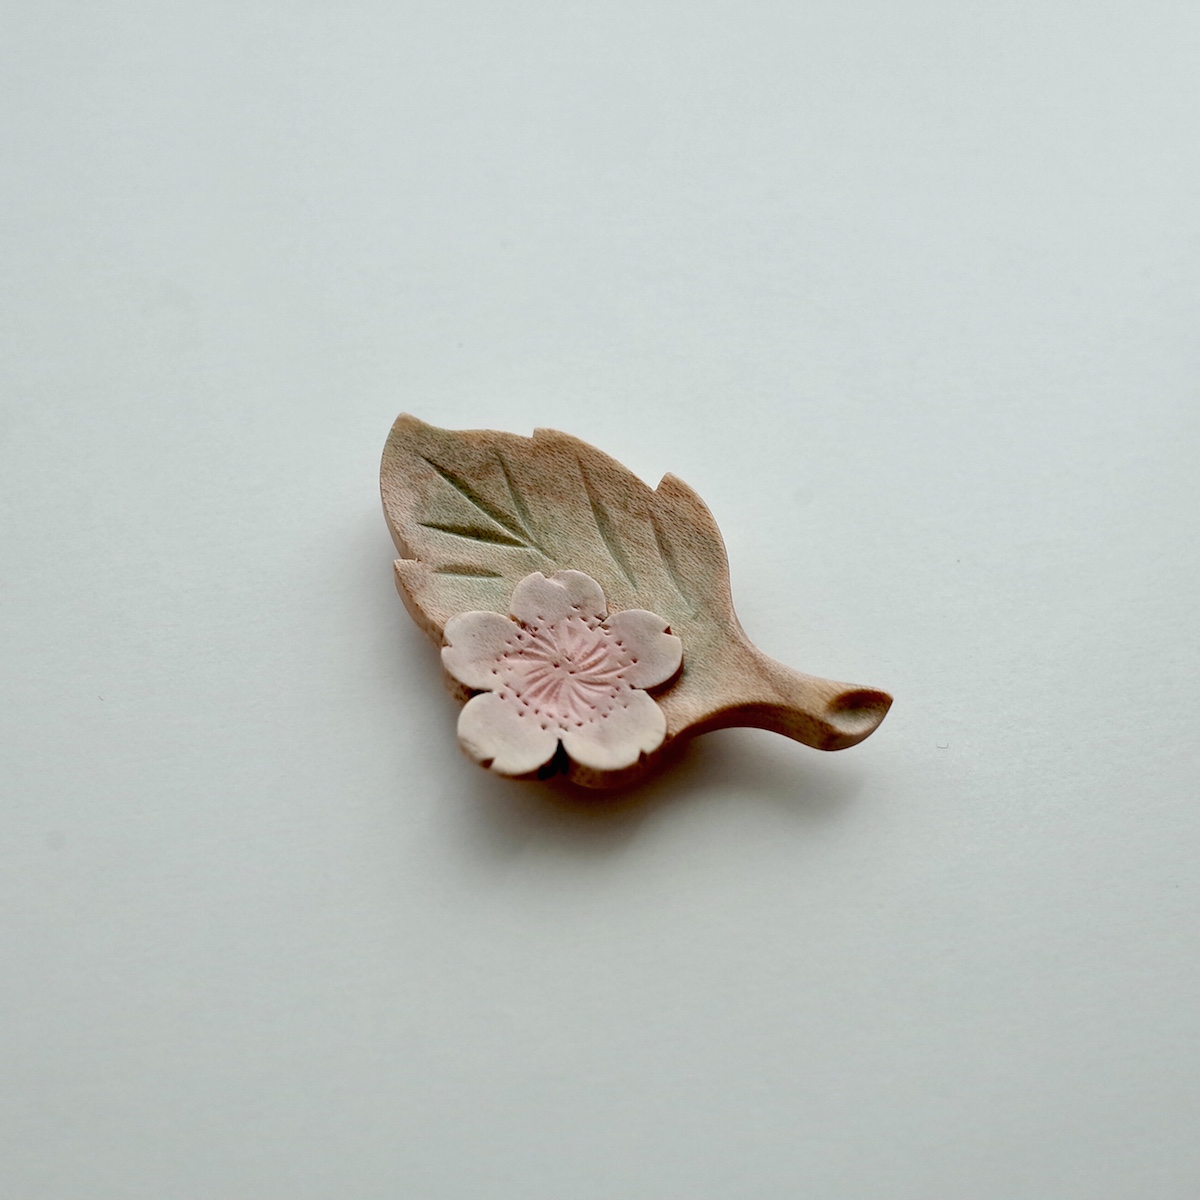 【受注】軽井沢彫:カービング:Sakura with leaf